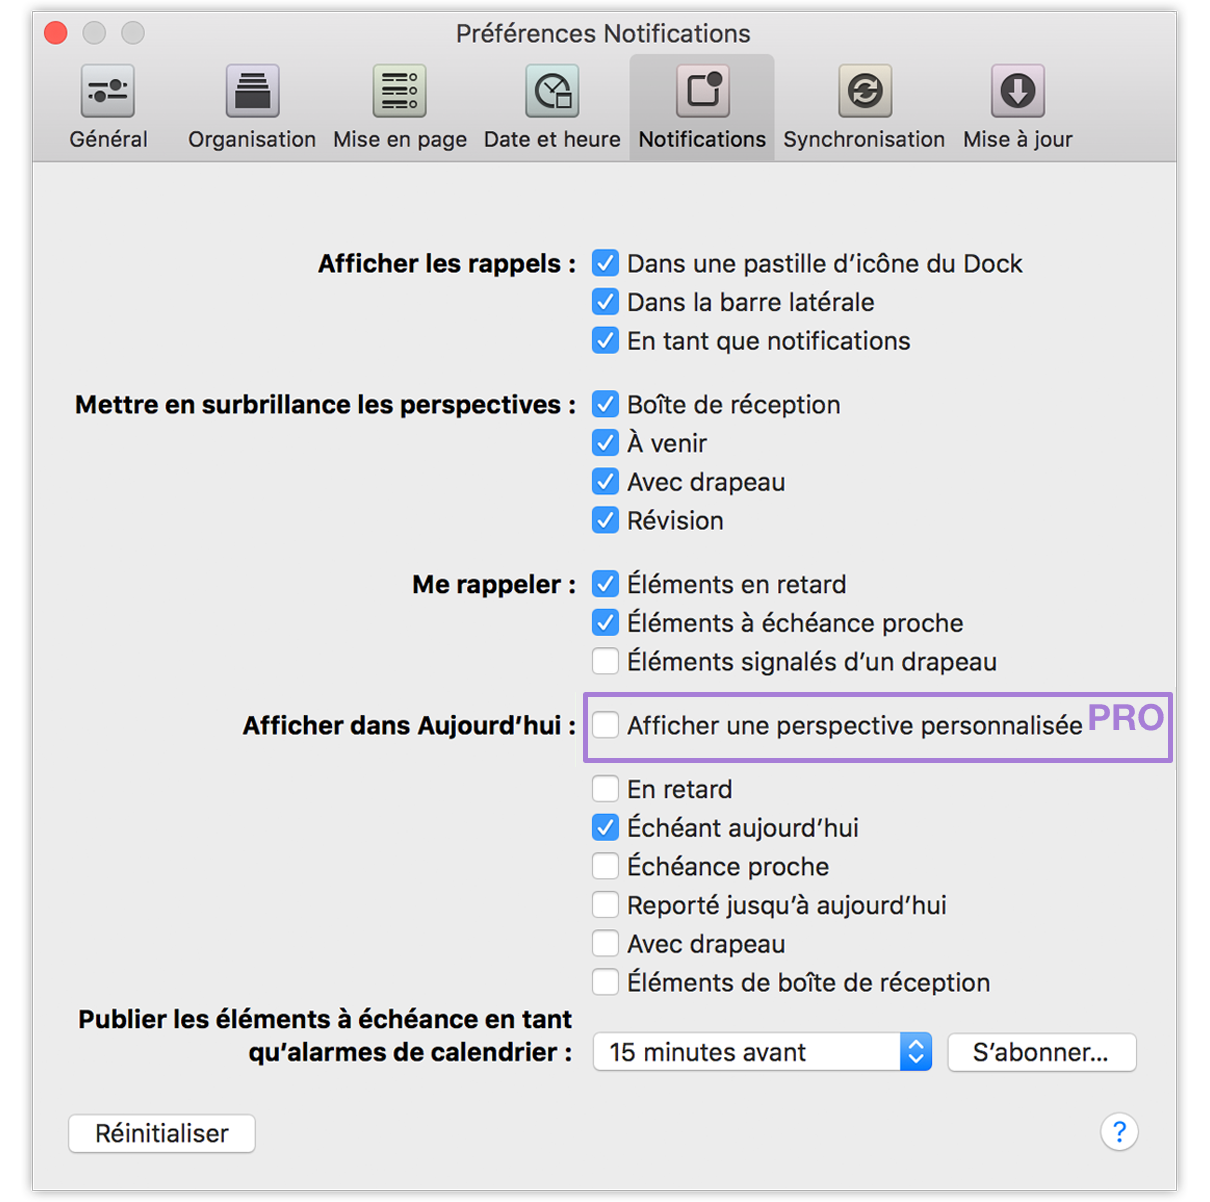 Préférences Notifications d'OmniFocus 2 pour Mac.